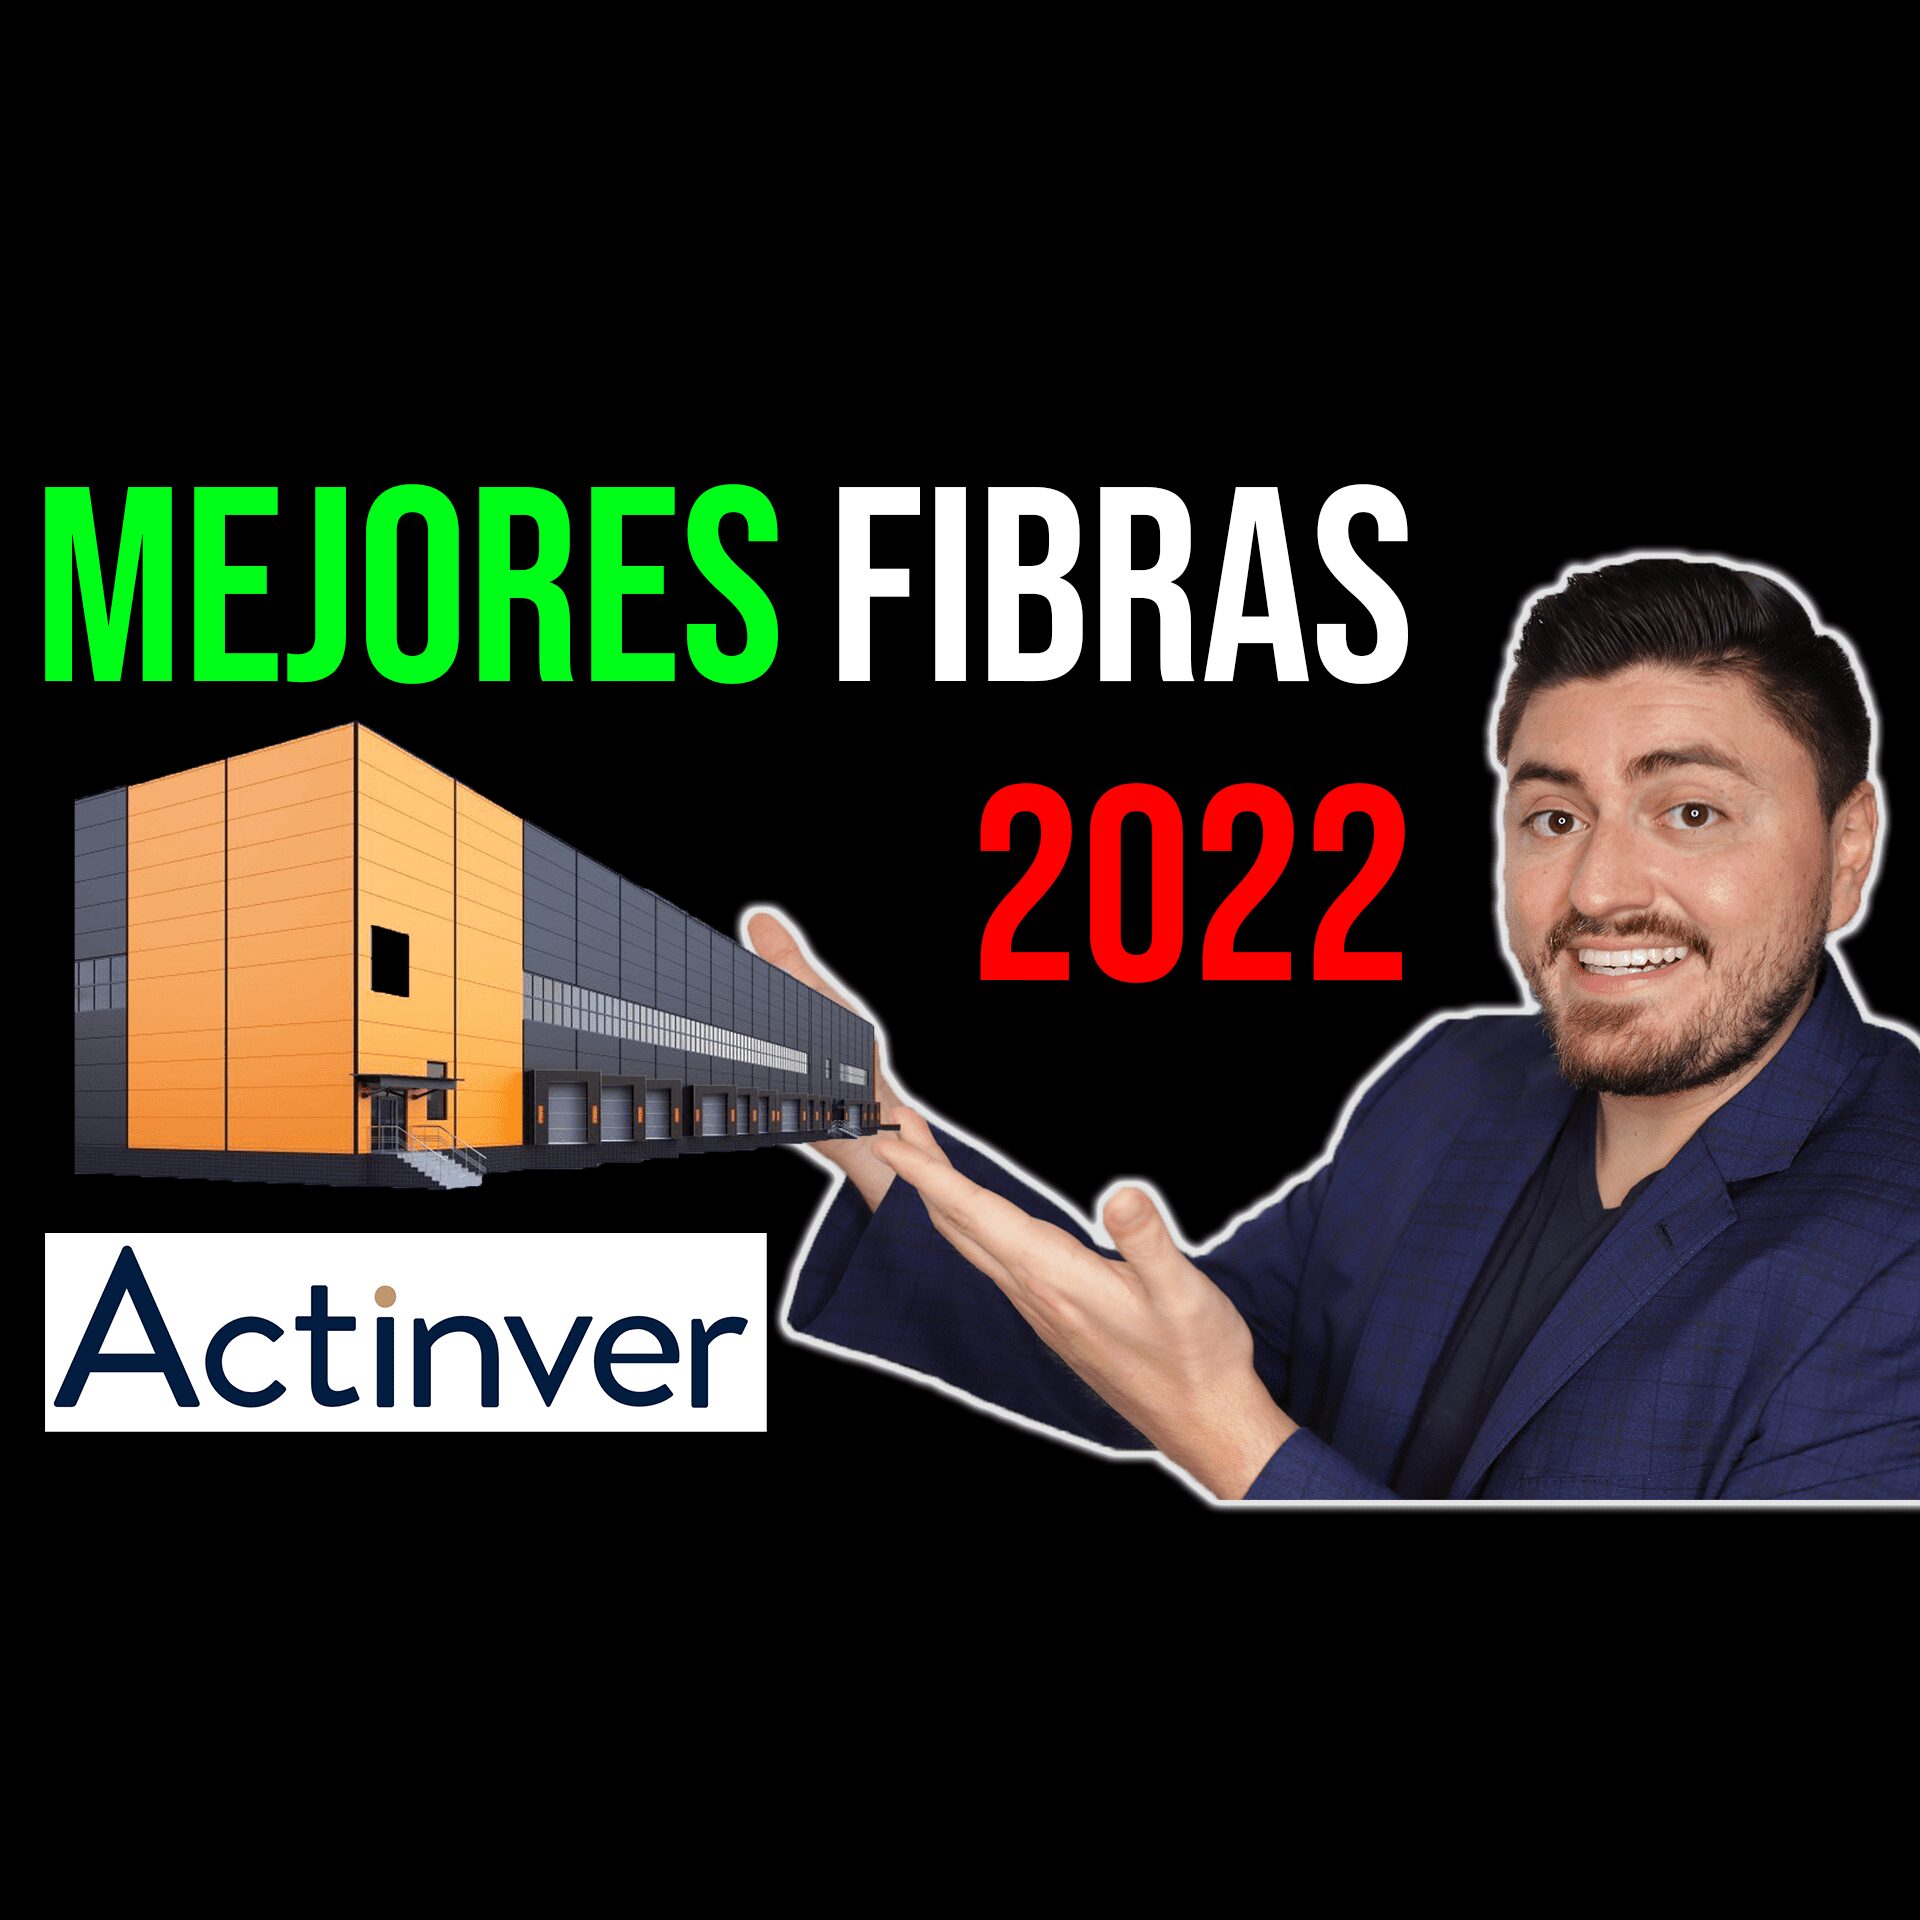 Los MEJORES FIBRAS para invertir en 2022.